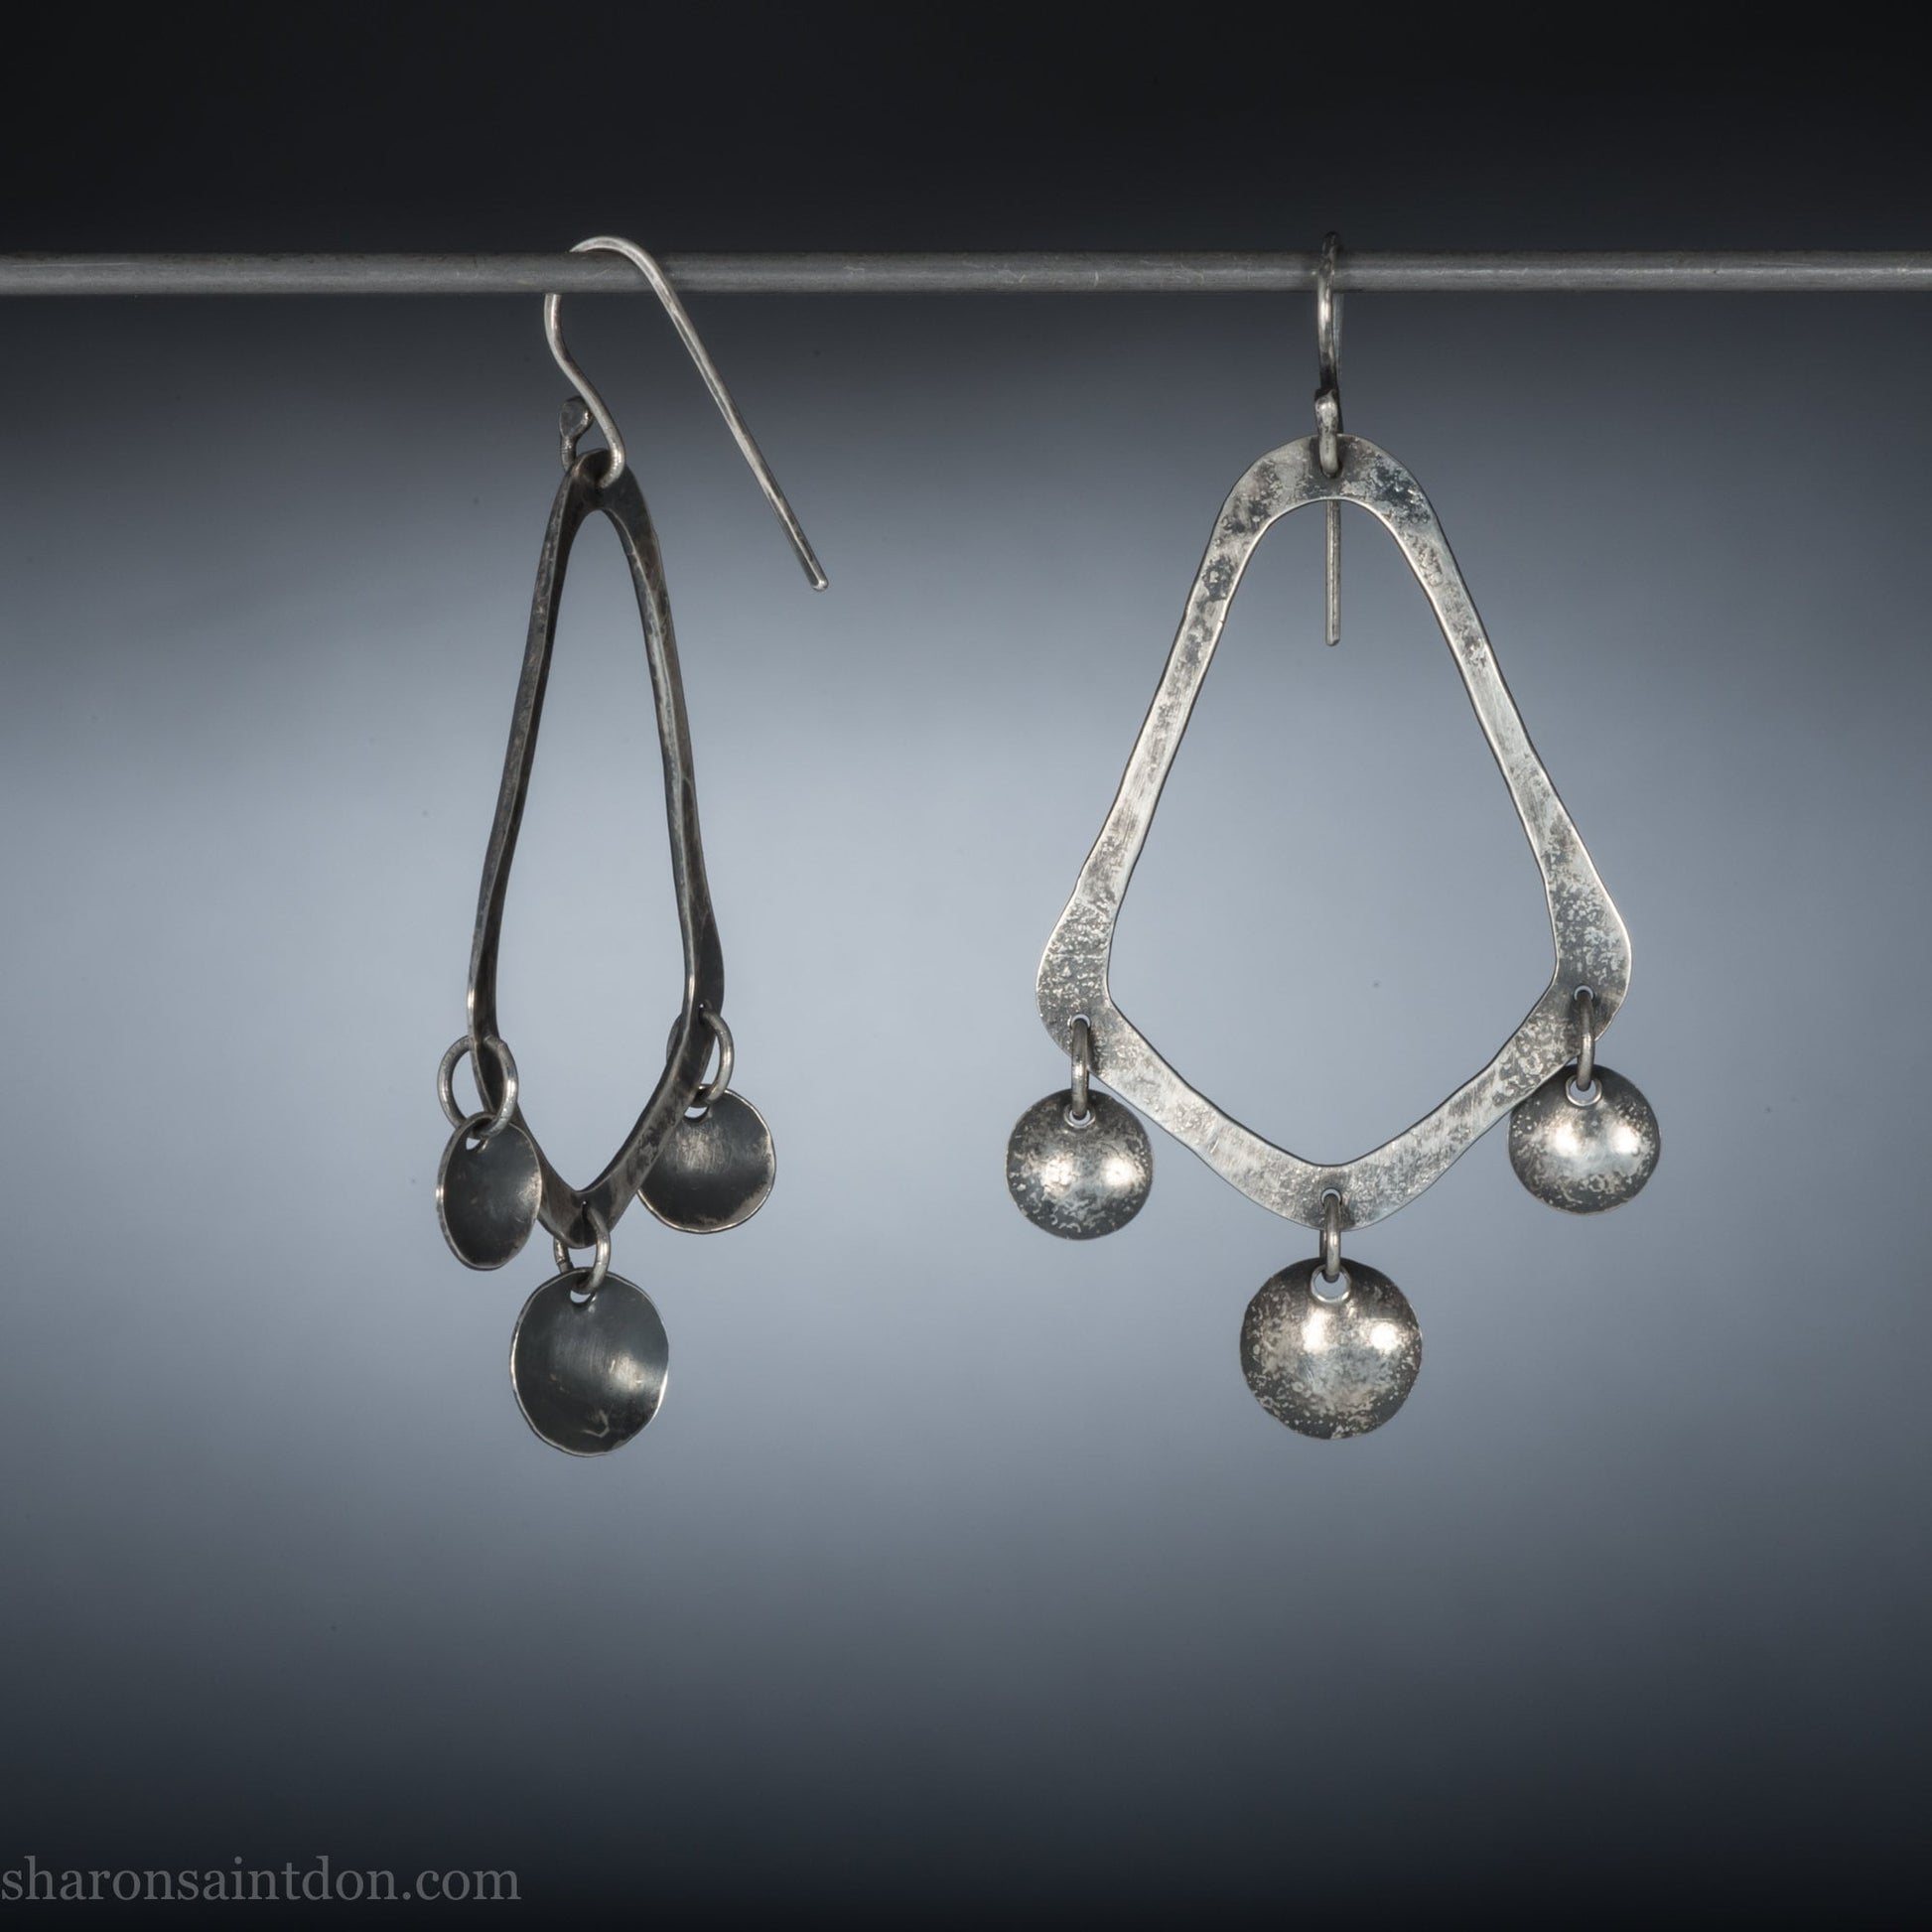 925 sterling silver handmade earrings for women. Comfortable, lightweight, chandelier dangle earrings with ear wire hooks.